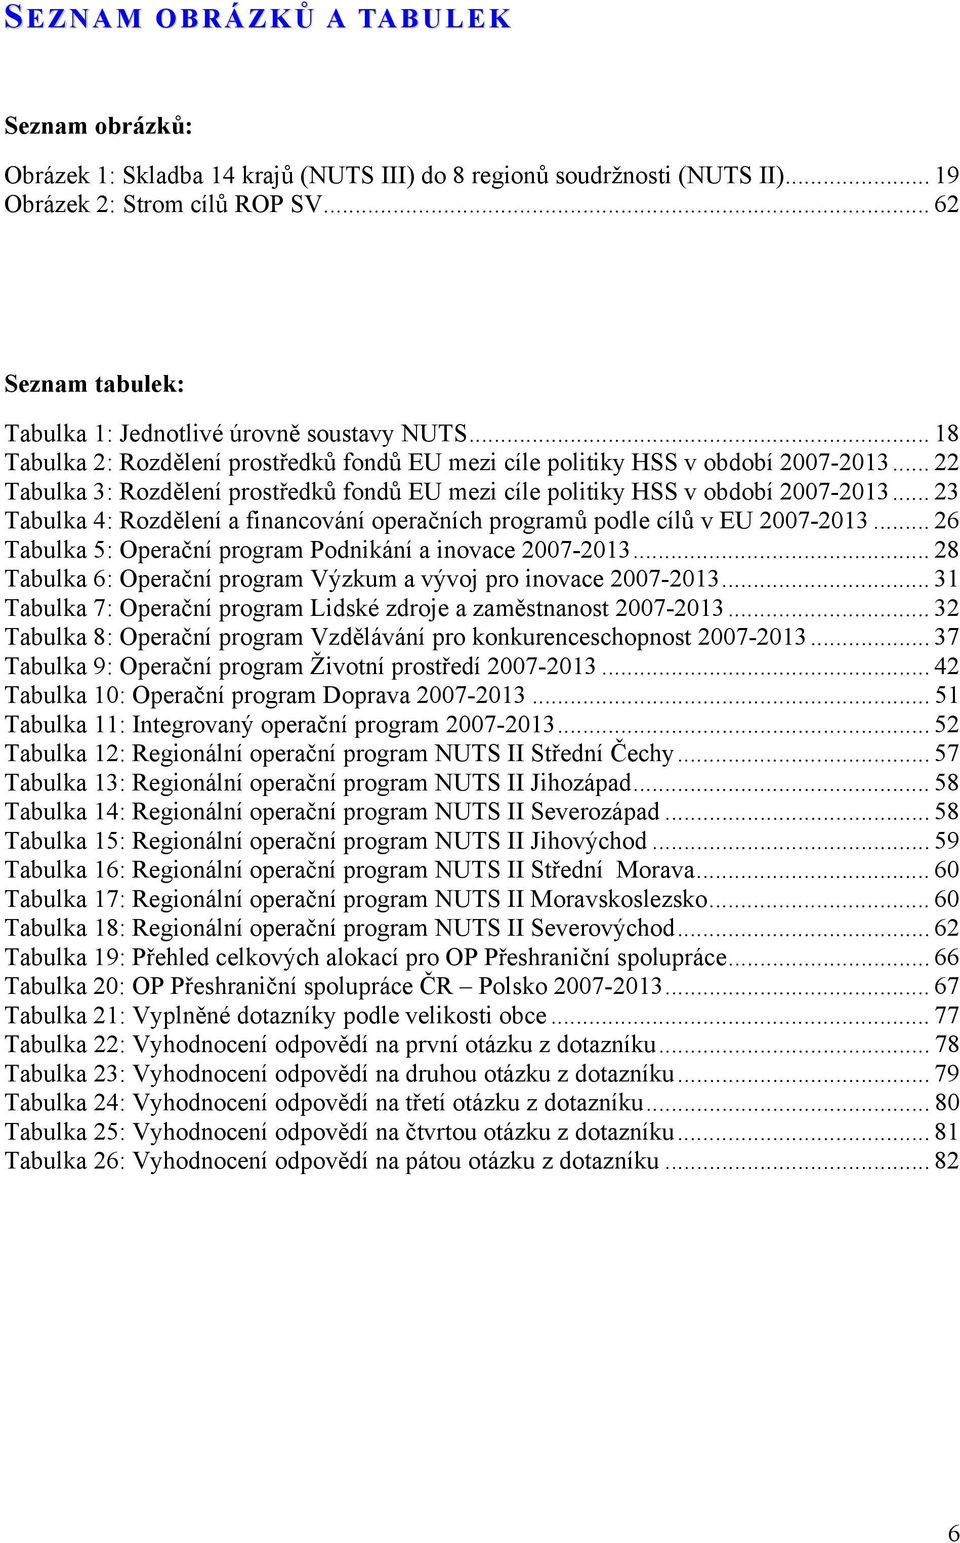 .. 22 Tabulka 3: Rozdělení prostředků fondů EU mezi cíle politiky HSS v období 2007-2013... 23 Tabulka 4: Rozdělení a financování operačních programů podle cílů v EU 2007-2013.